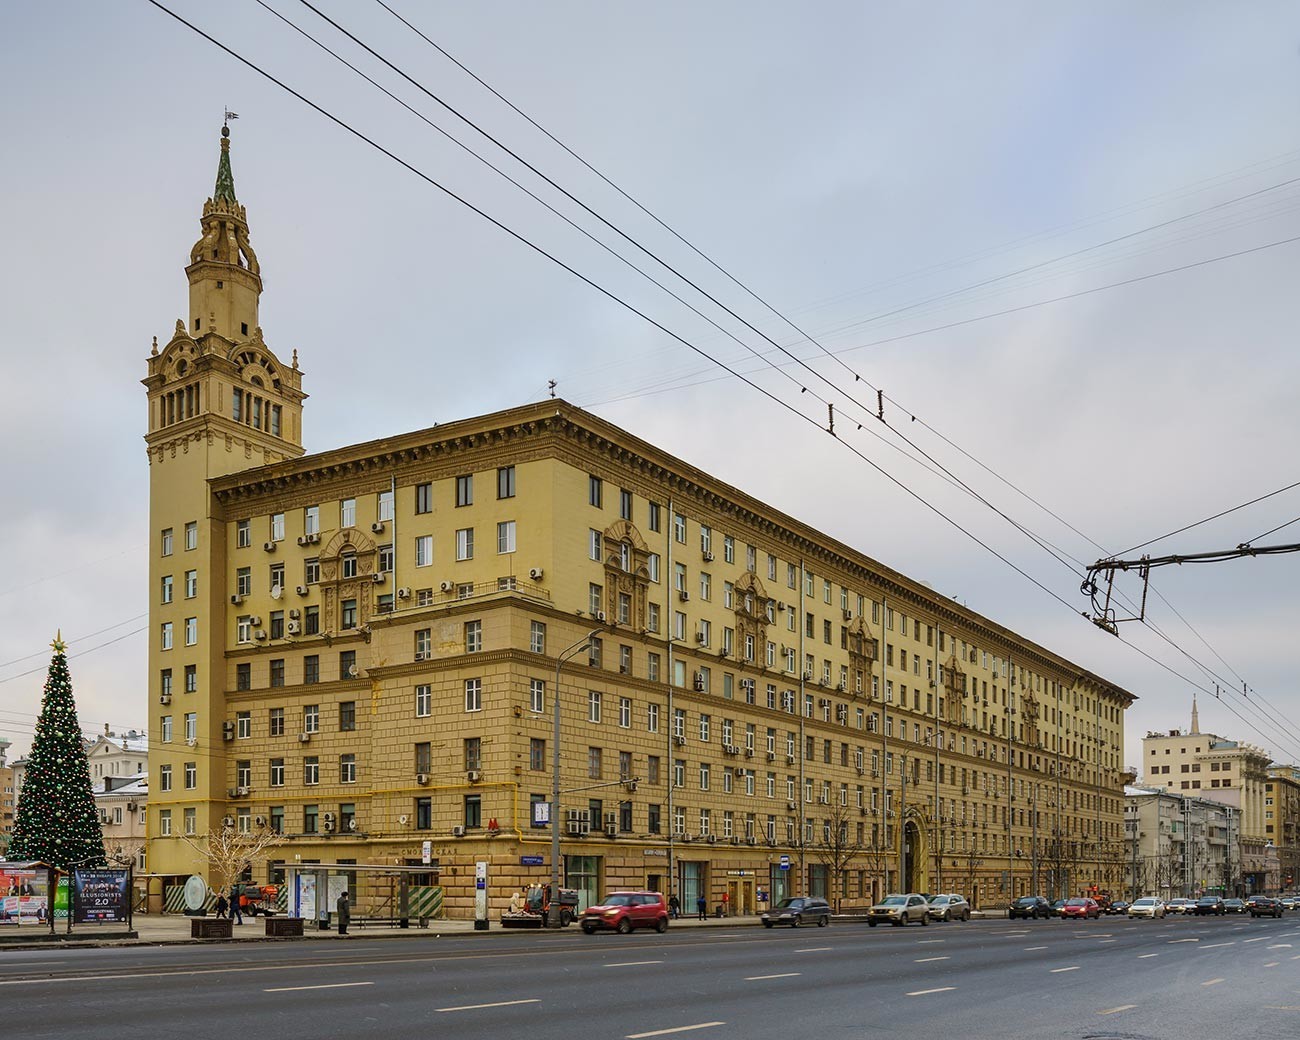 Il palazzo con la torretta in piazza Smolenskaja